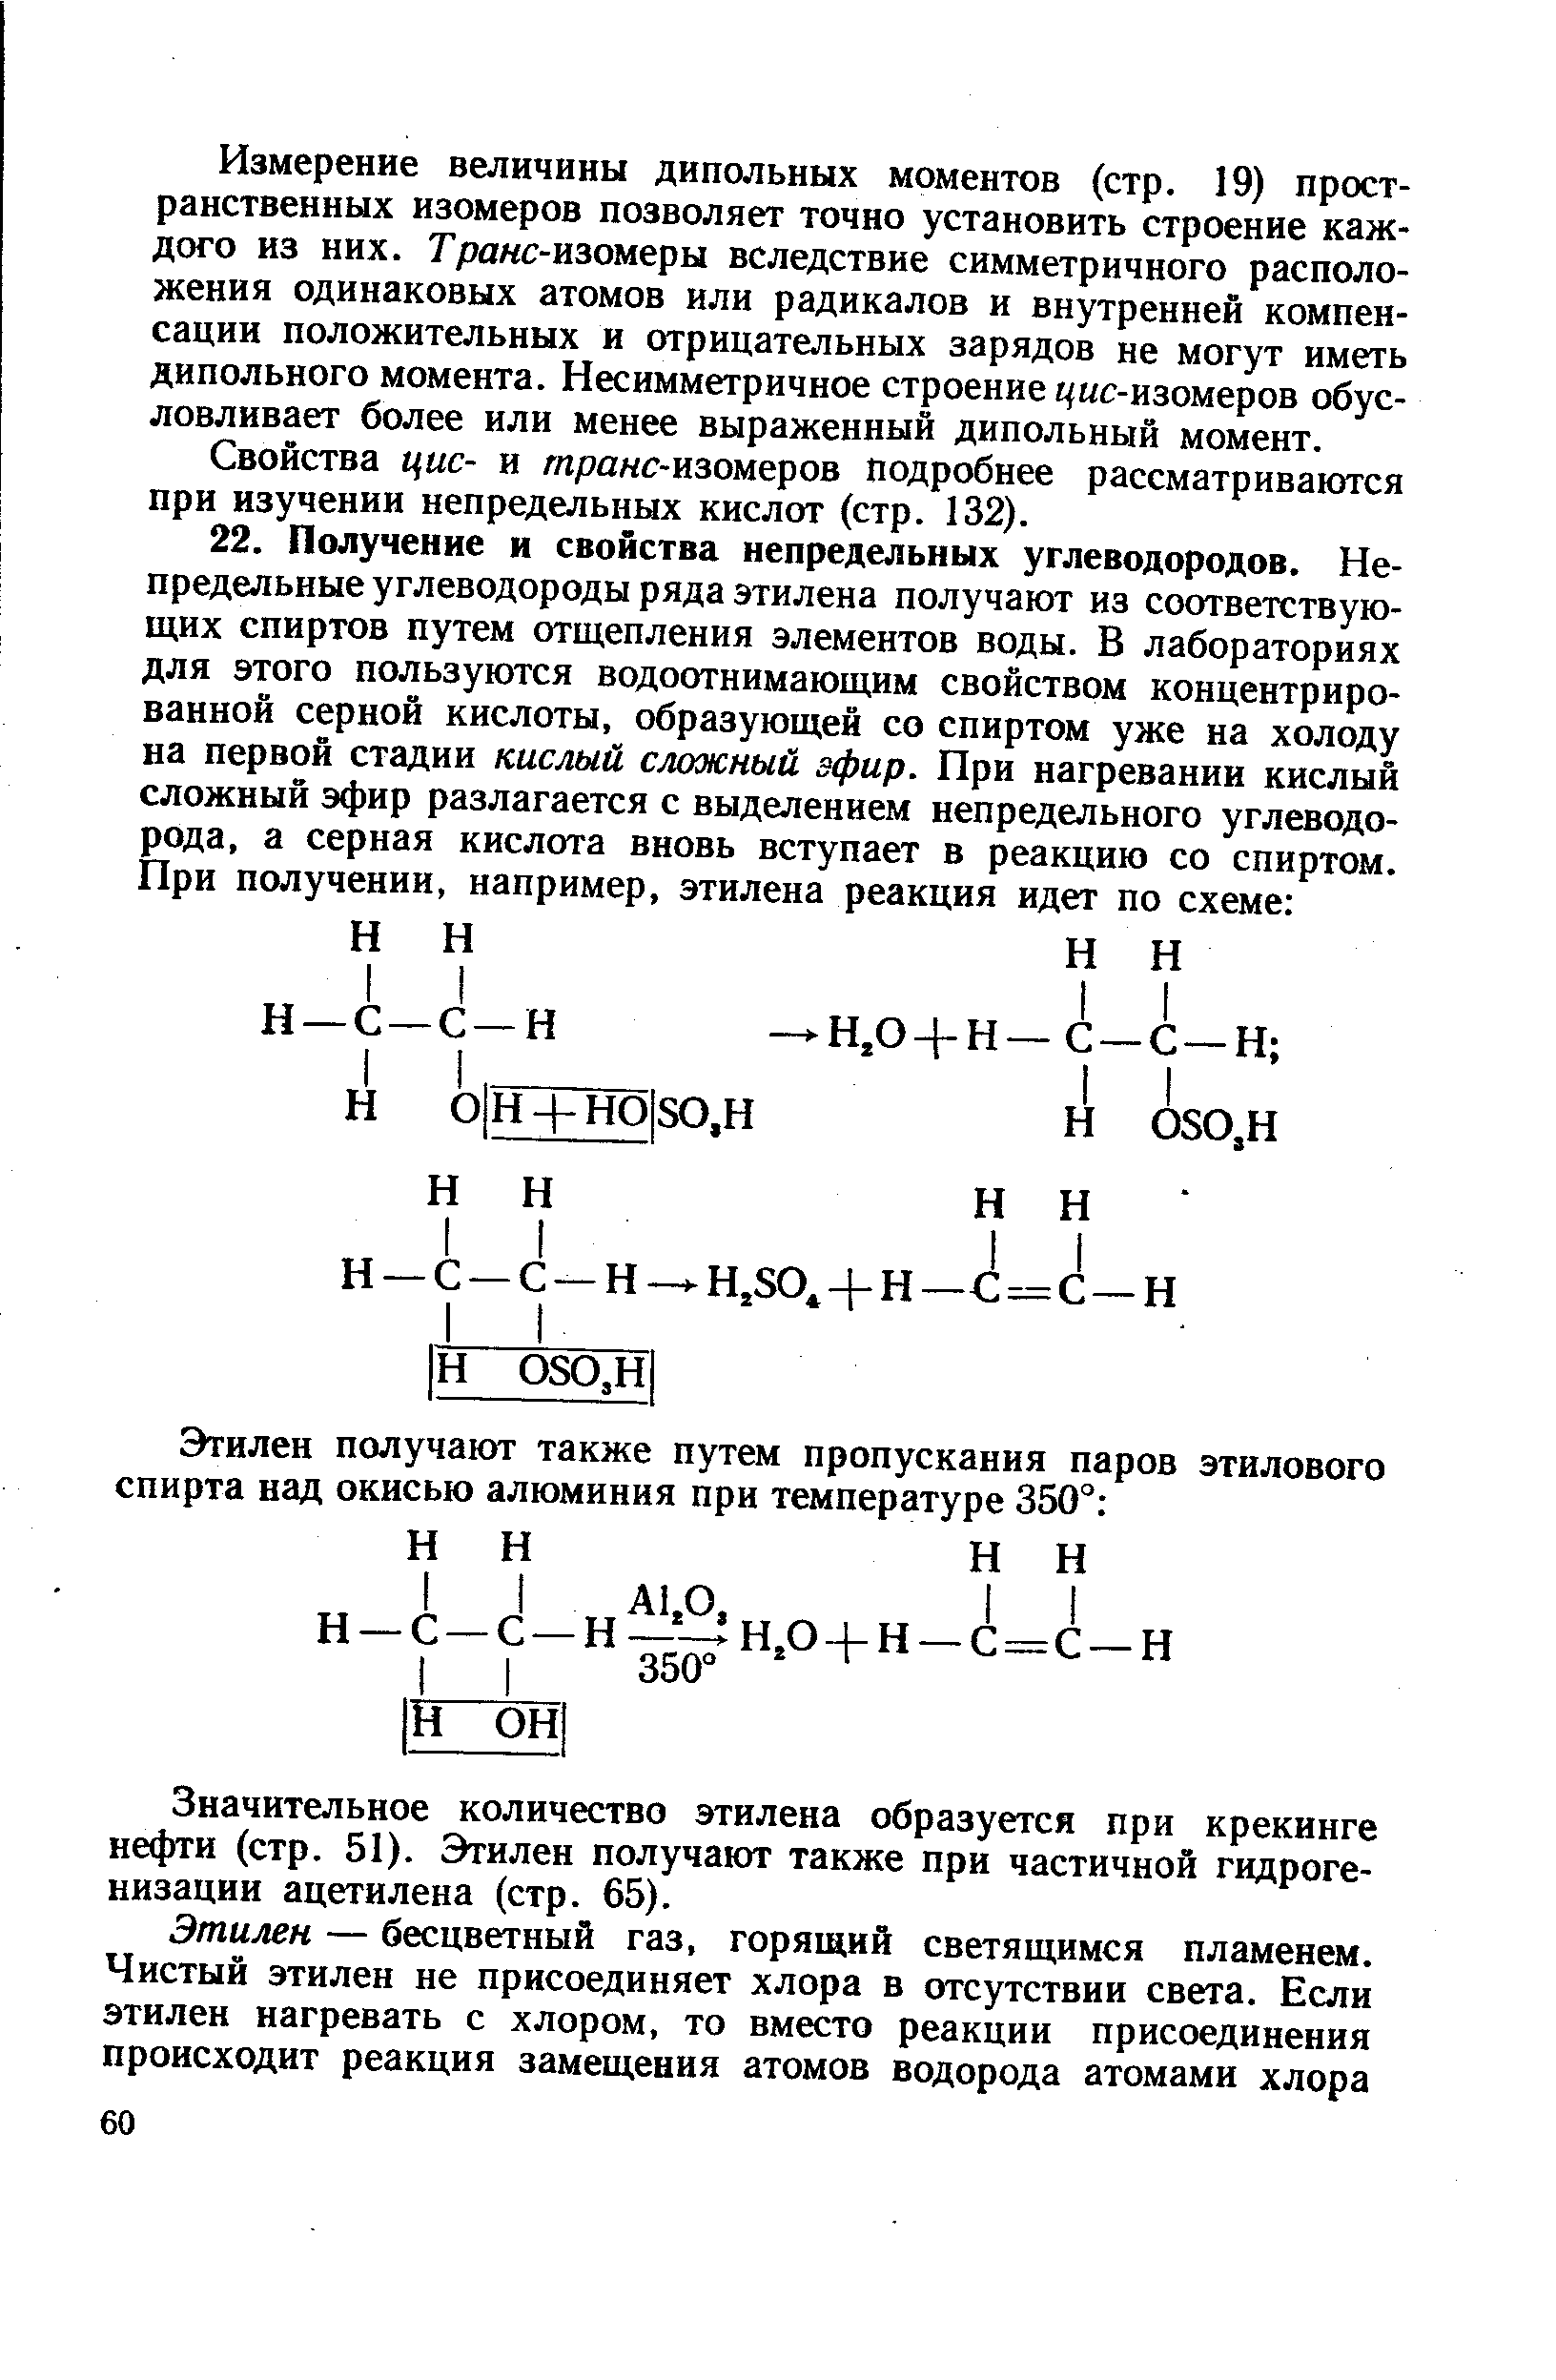 Значительное количество этилена образуется при крекинге нефти (стр. 51). Этилен получают также при частичной гидрогенизации ацетилена (стр. 65).